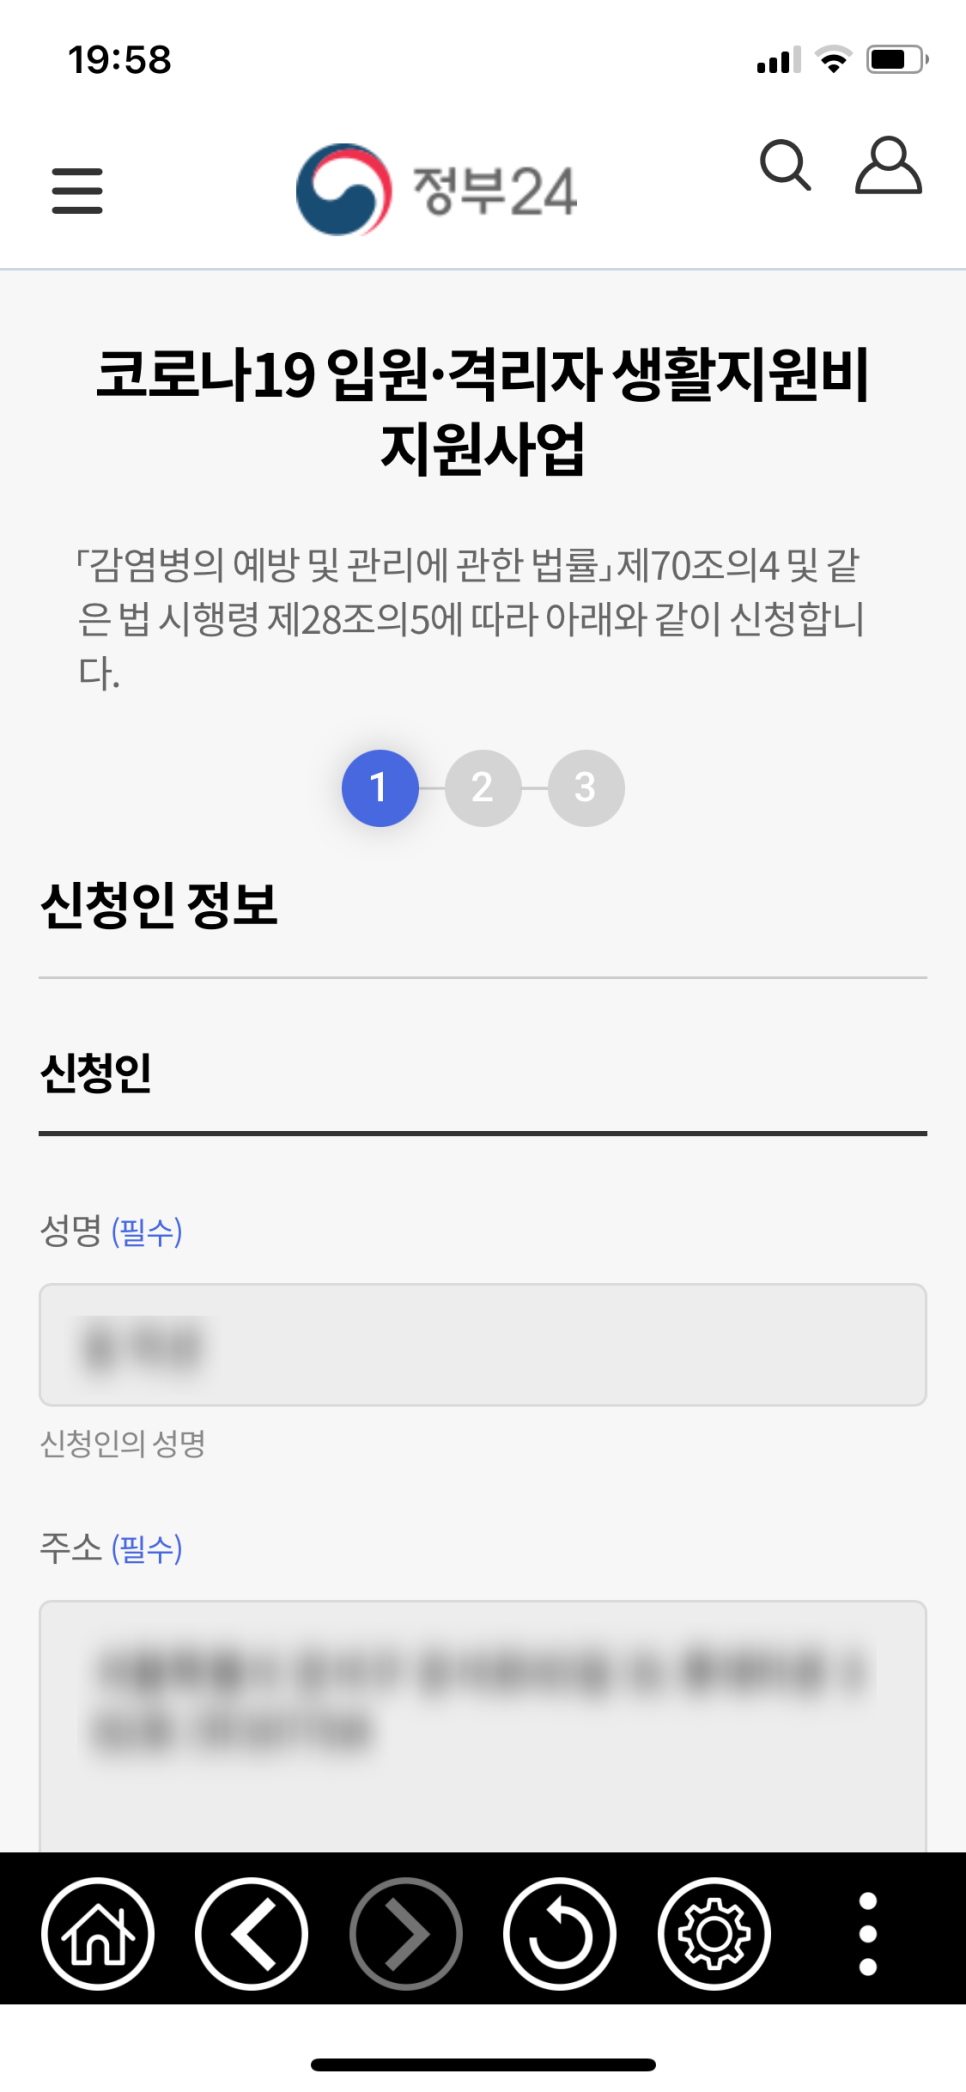 정부24 온라인으로 코로나19 자가 격리자 생활지원비 지원 신청 완료